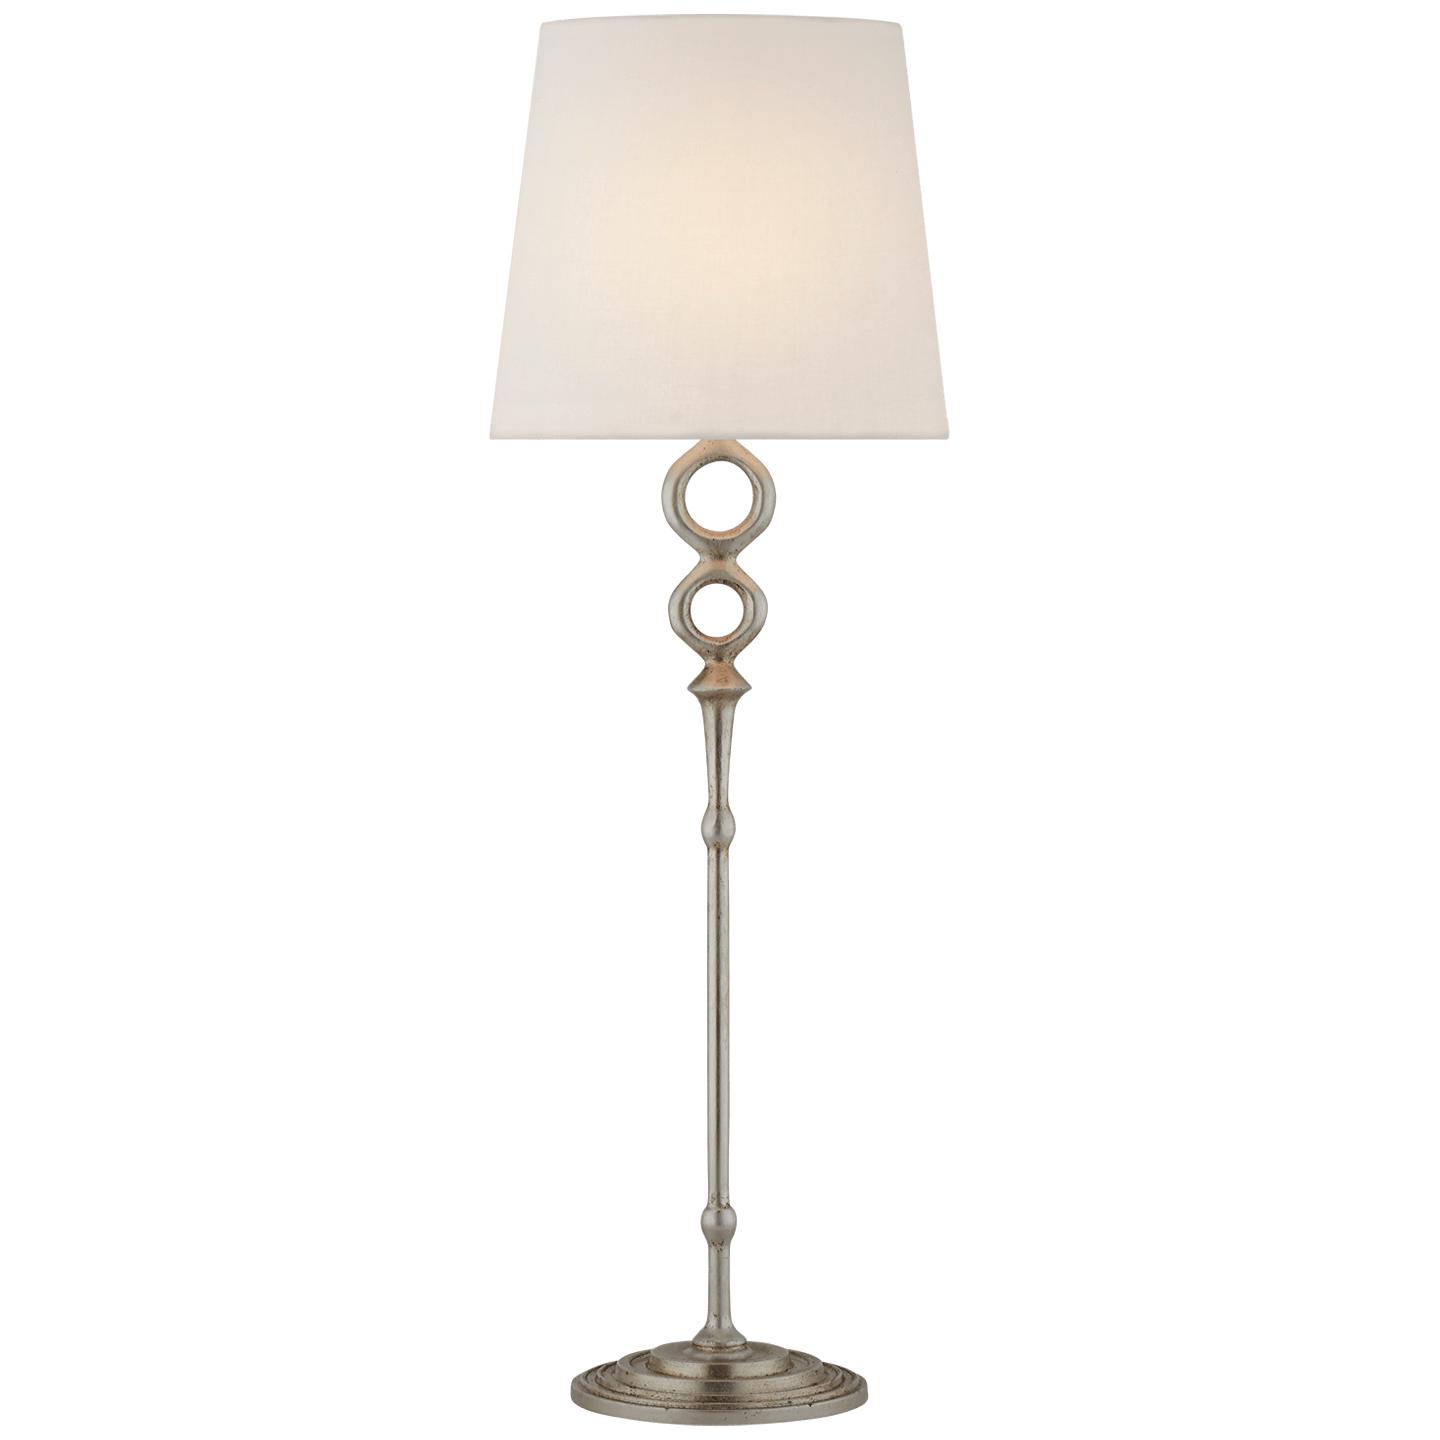 Купить Настольная лампа Bristol Table Lamp в интернет-магазине roooms.ru